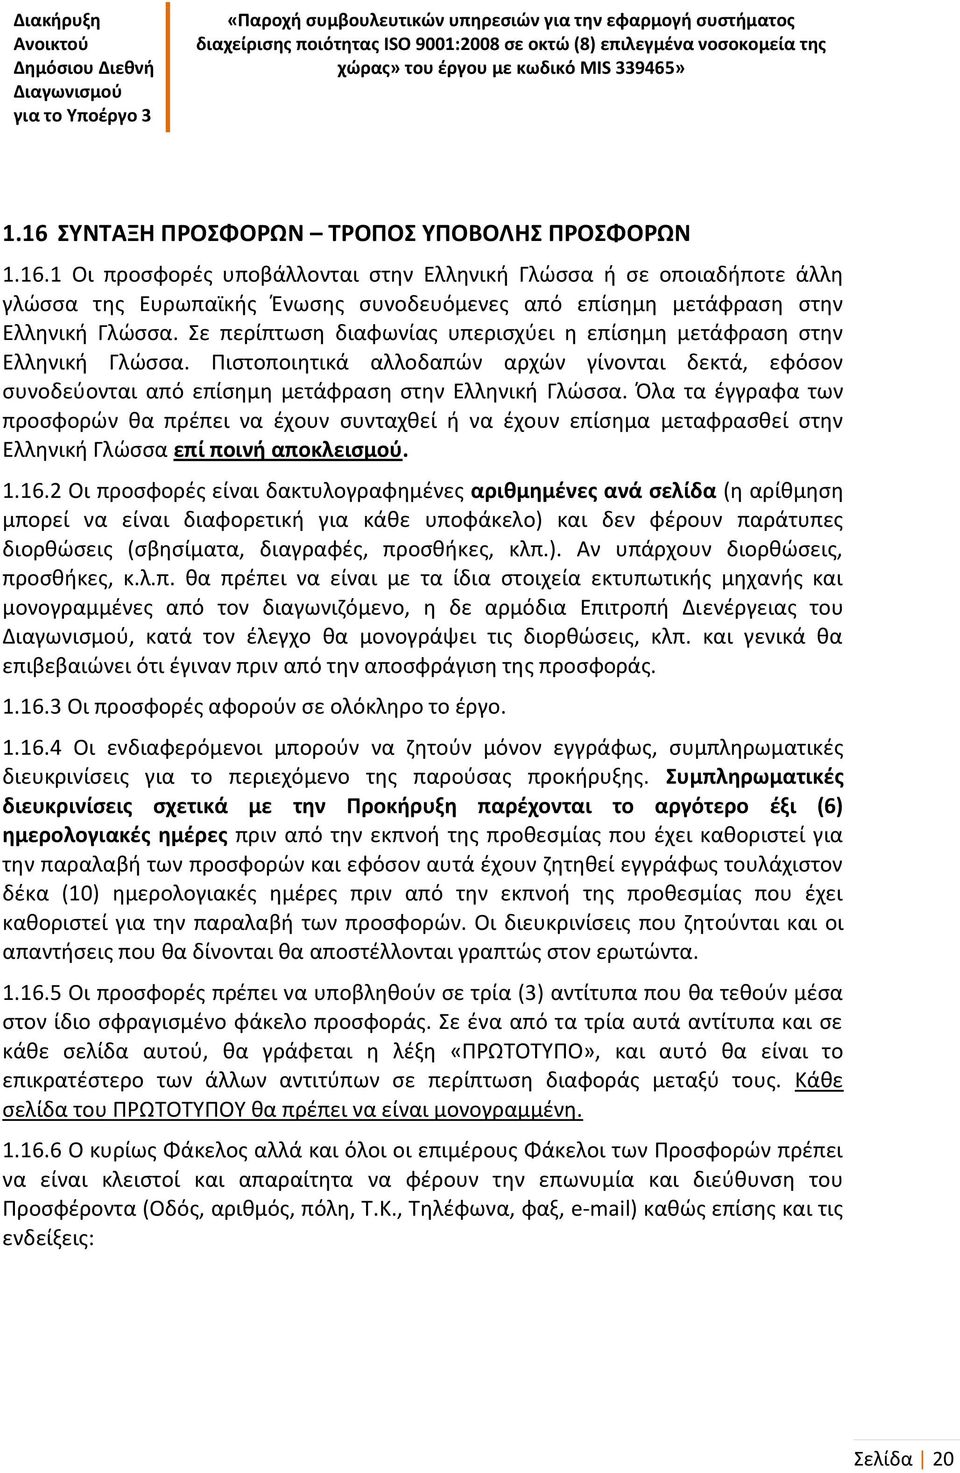 Όλα τα έγγραφα των προσφορών θα πρέπει να έχουν συνταχθεί ή να έχουν επίσημα μεταφρασθεί στην Ελληνική Γλώσσα επί ποινή αποκλεισμού. 1.16.